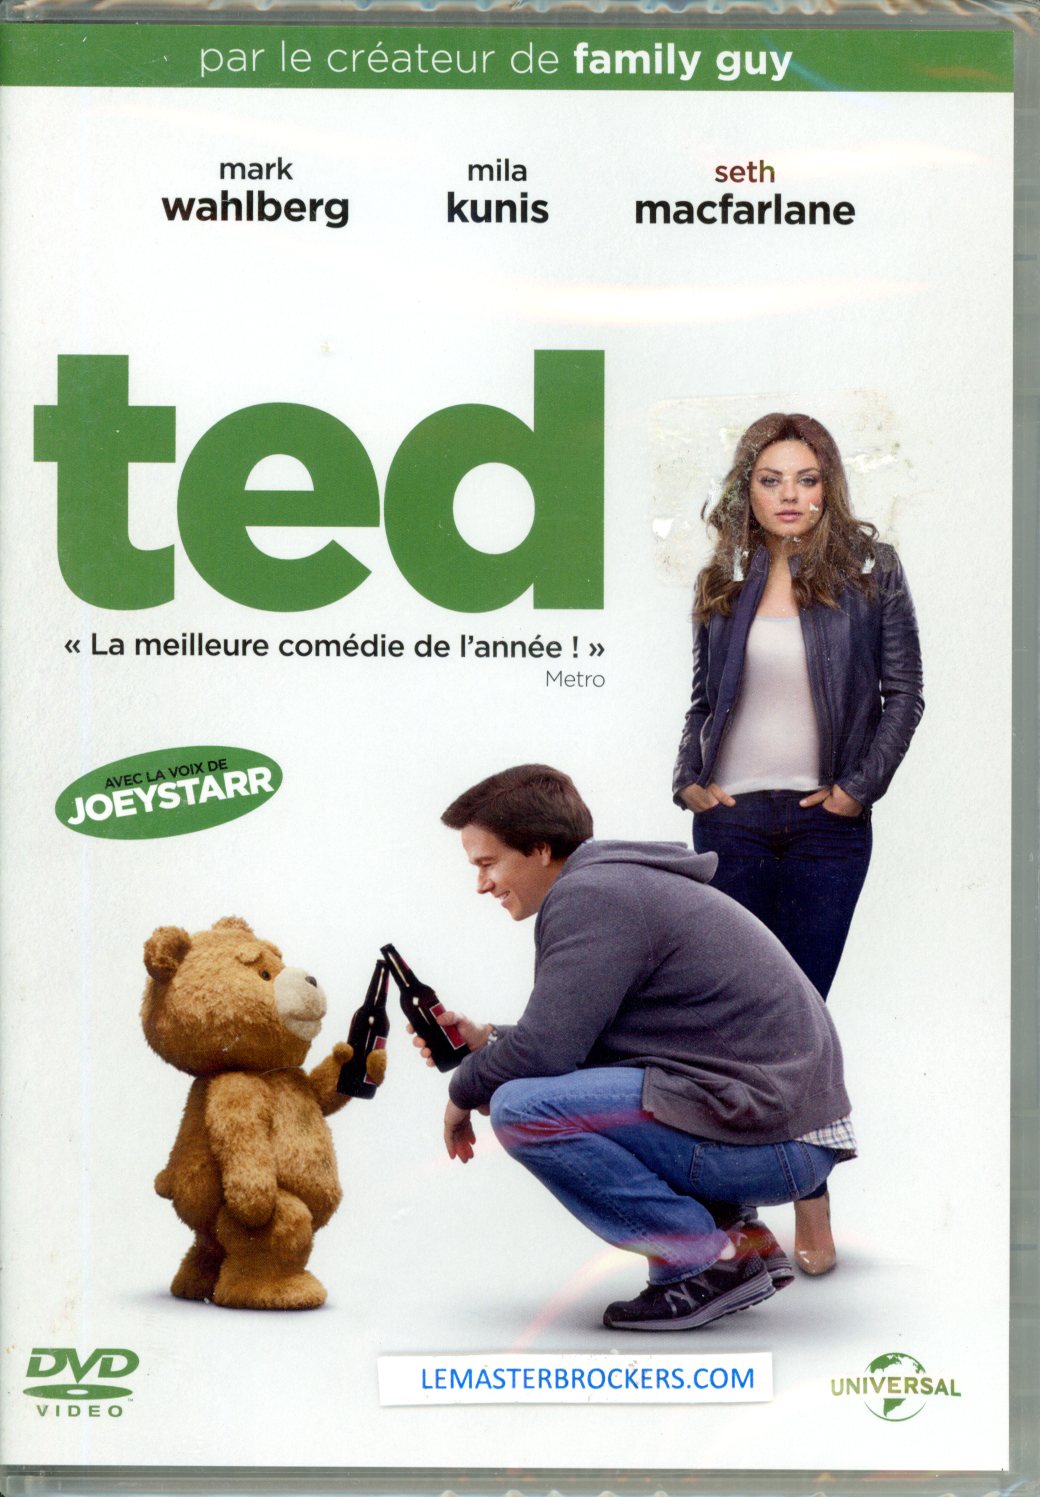 TED SETH MARCFARLANE DVD NEUF 5050582925746